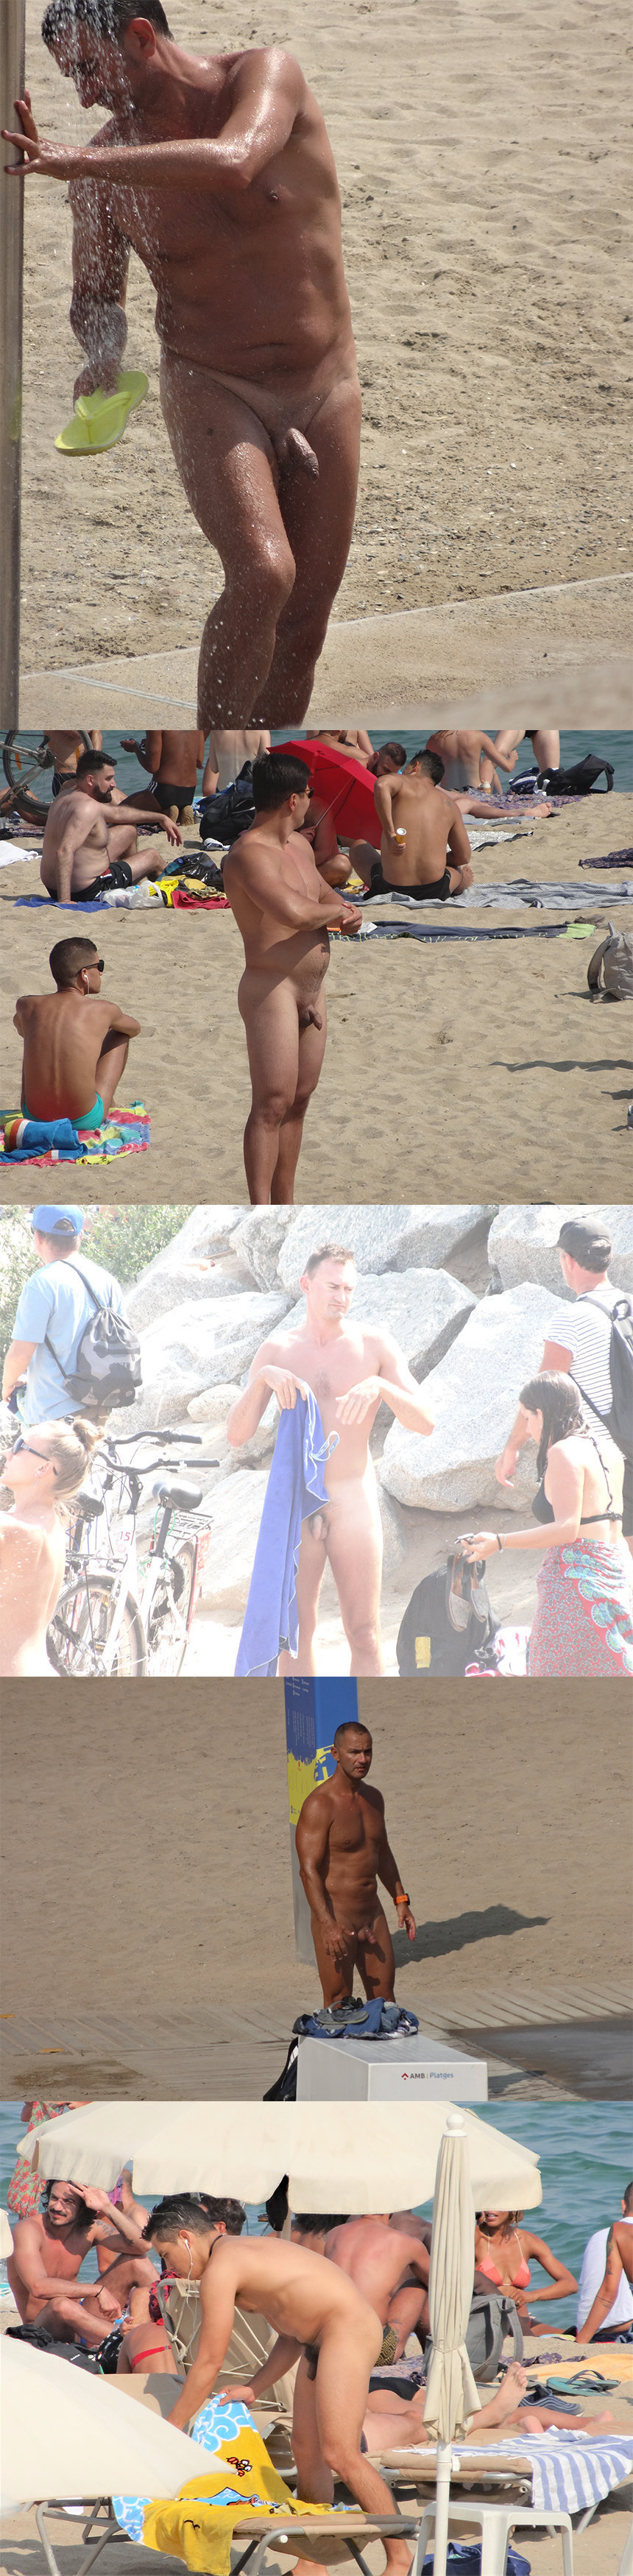 nudist guys caught by hidden cam in barcelona